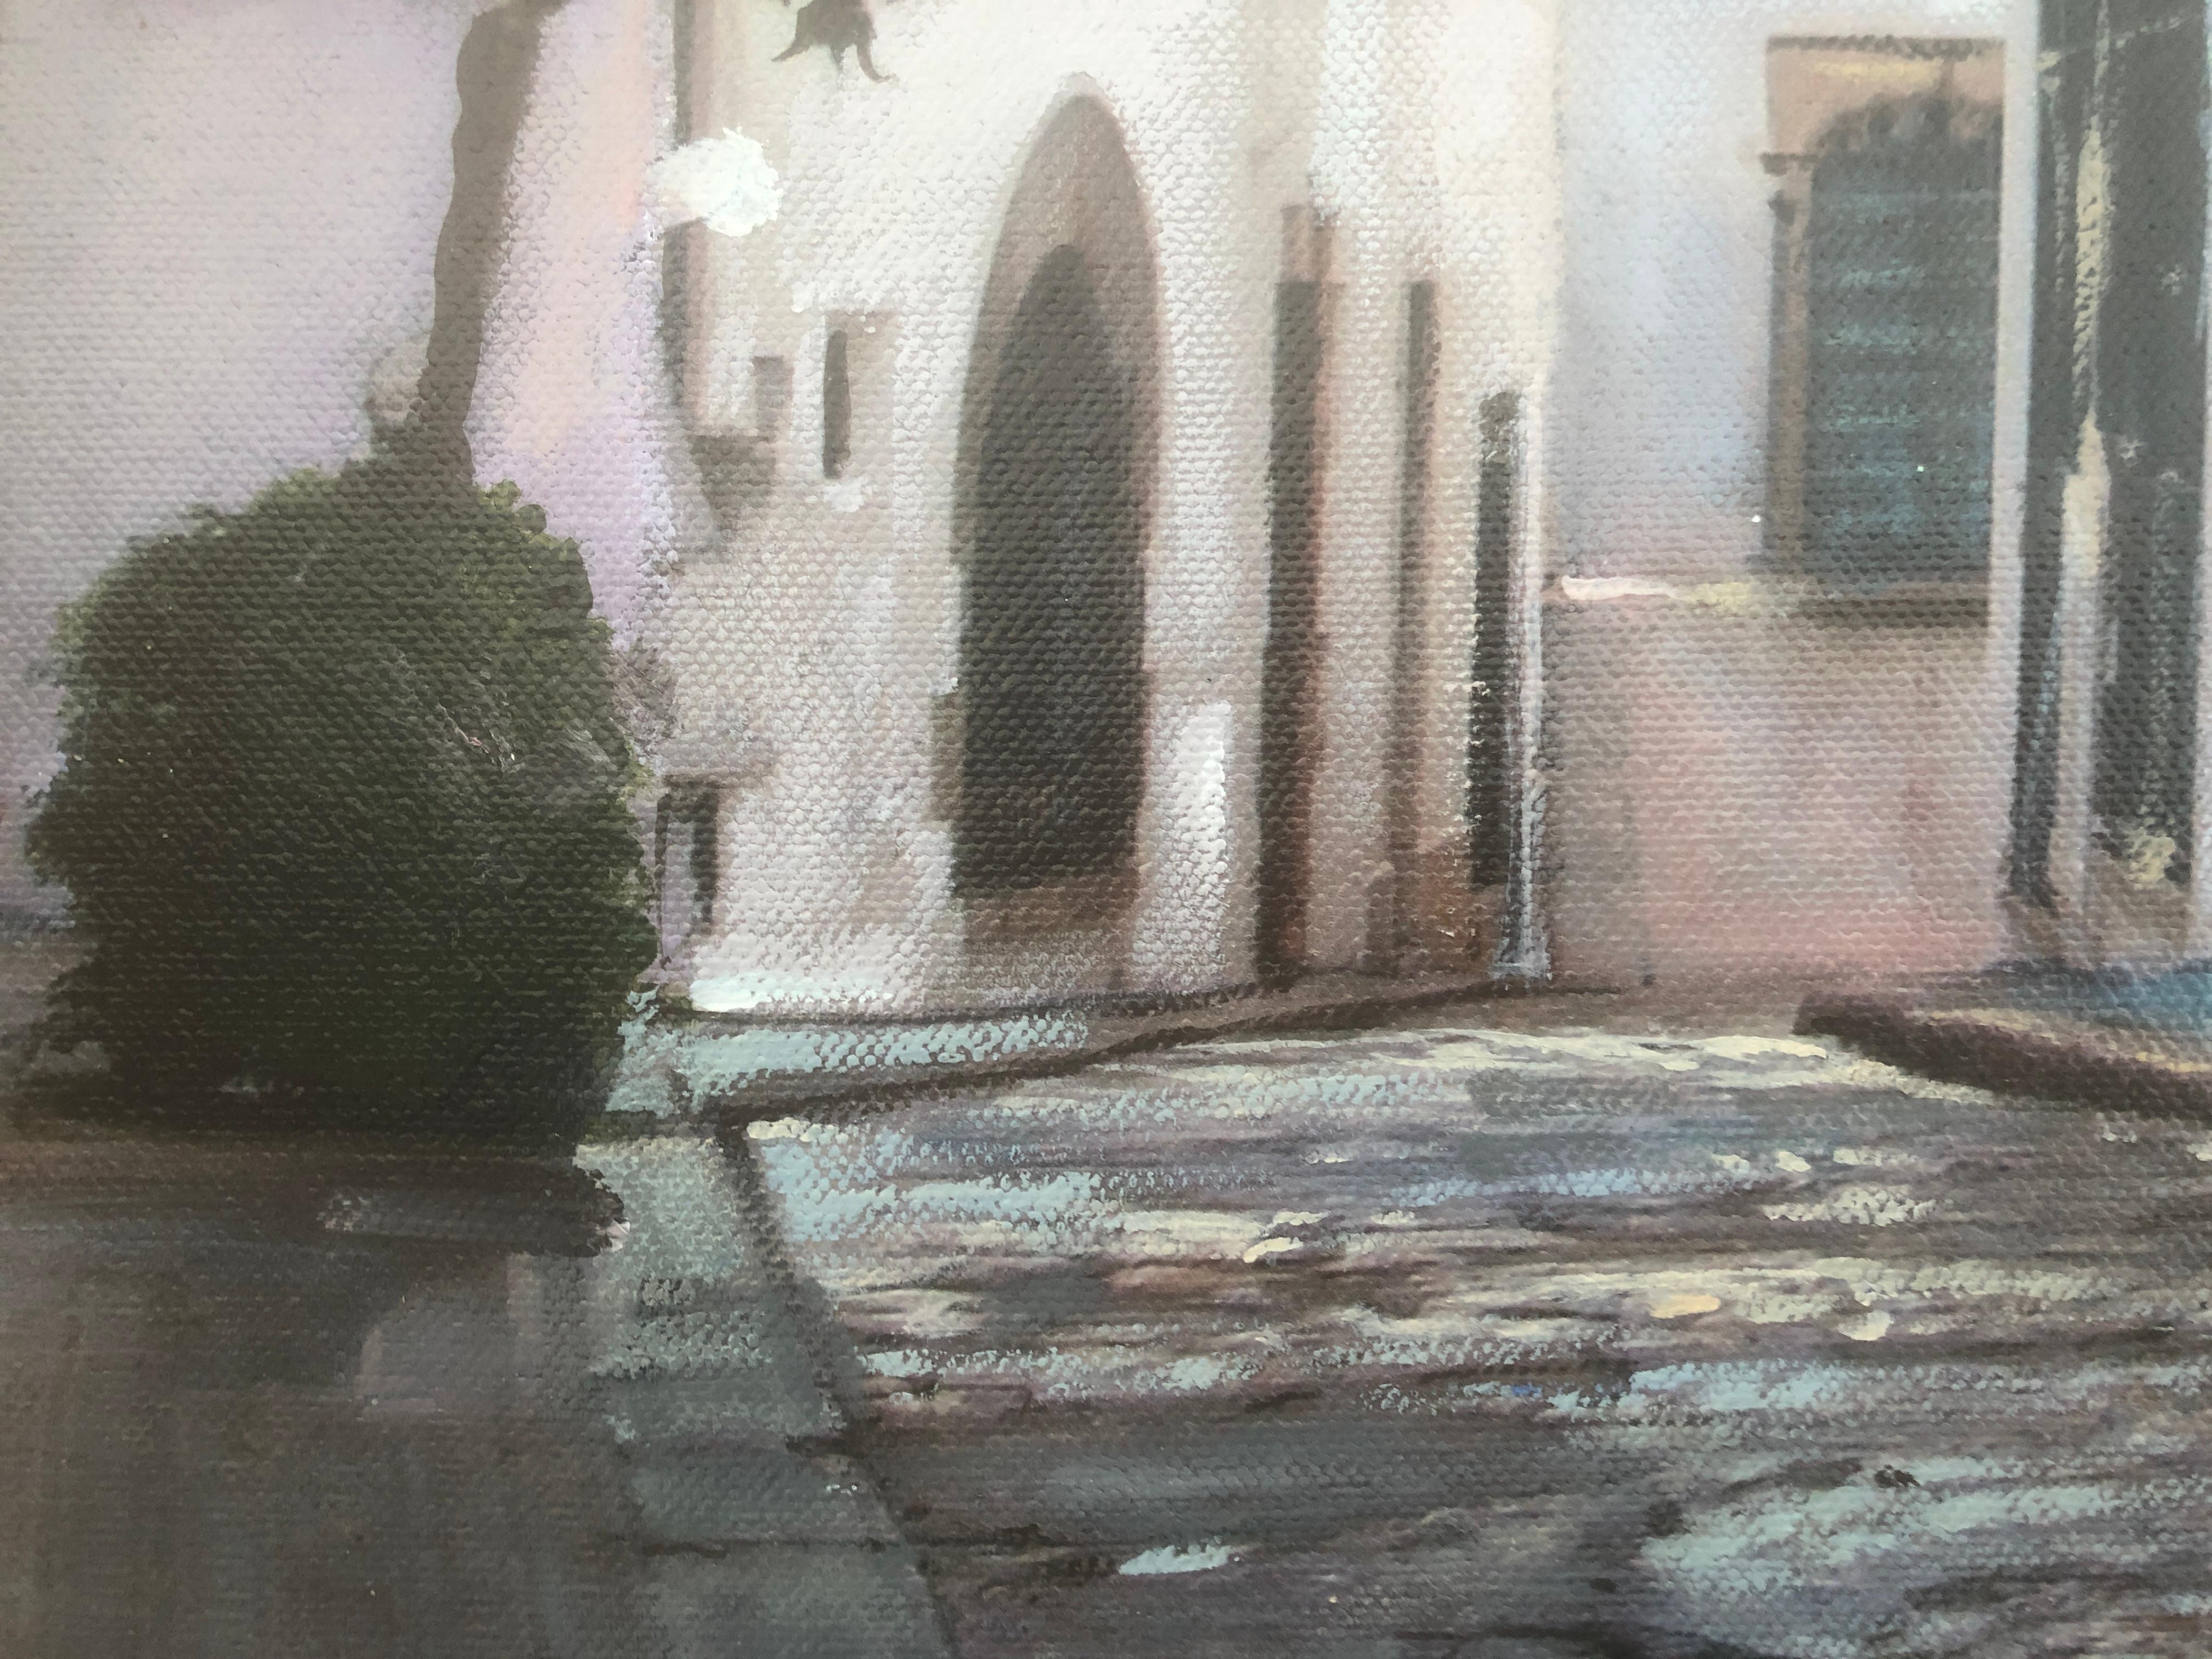 Corner de Sitges - Paysage urbain sur toile - Espagne - Réalisme Painting par José Luis Fuentetaja